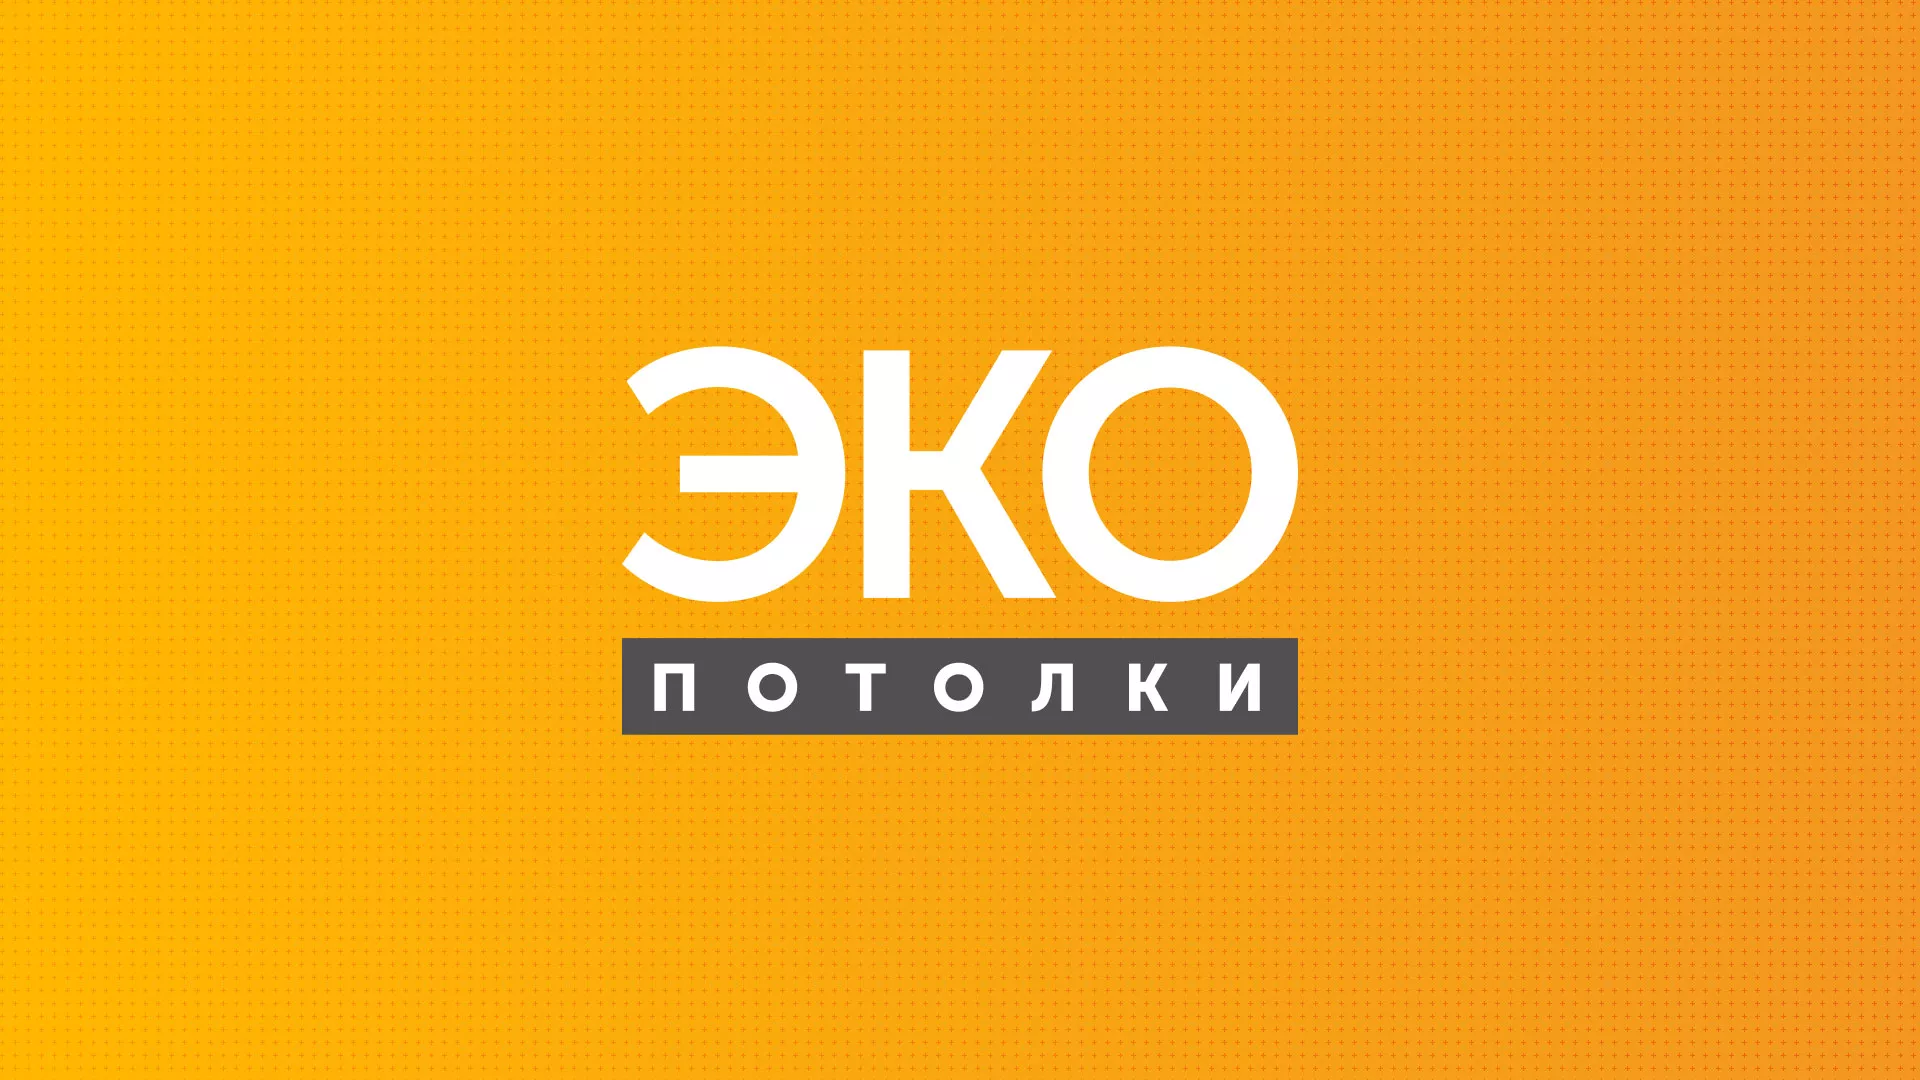 Разработка сайта по натяжным потолкам «Эко Потолки» в Плавске